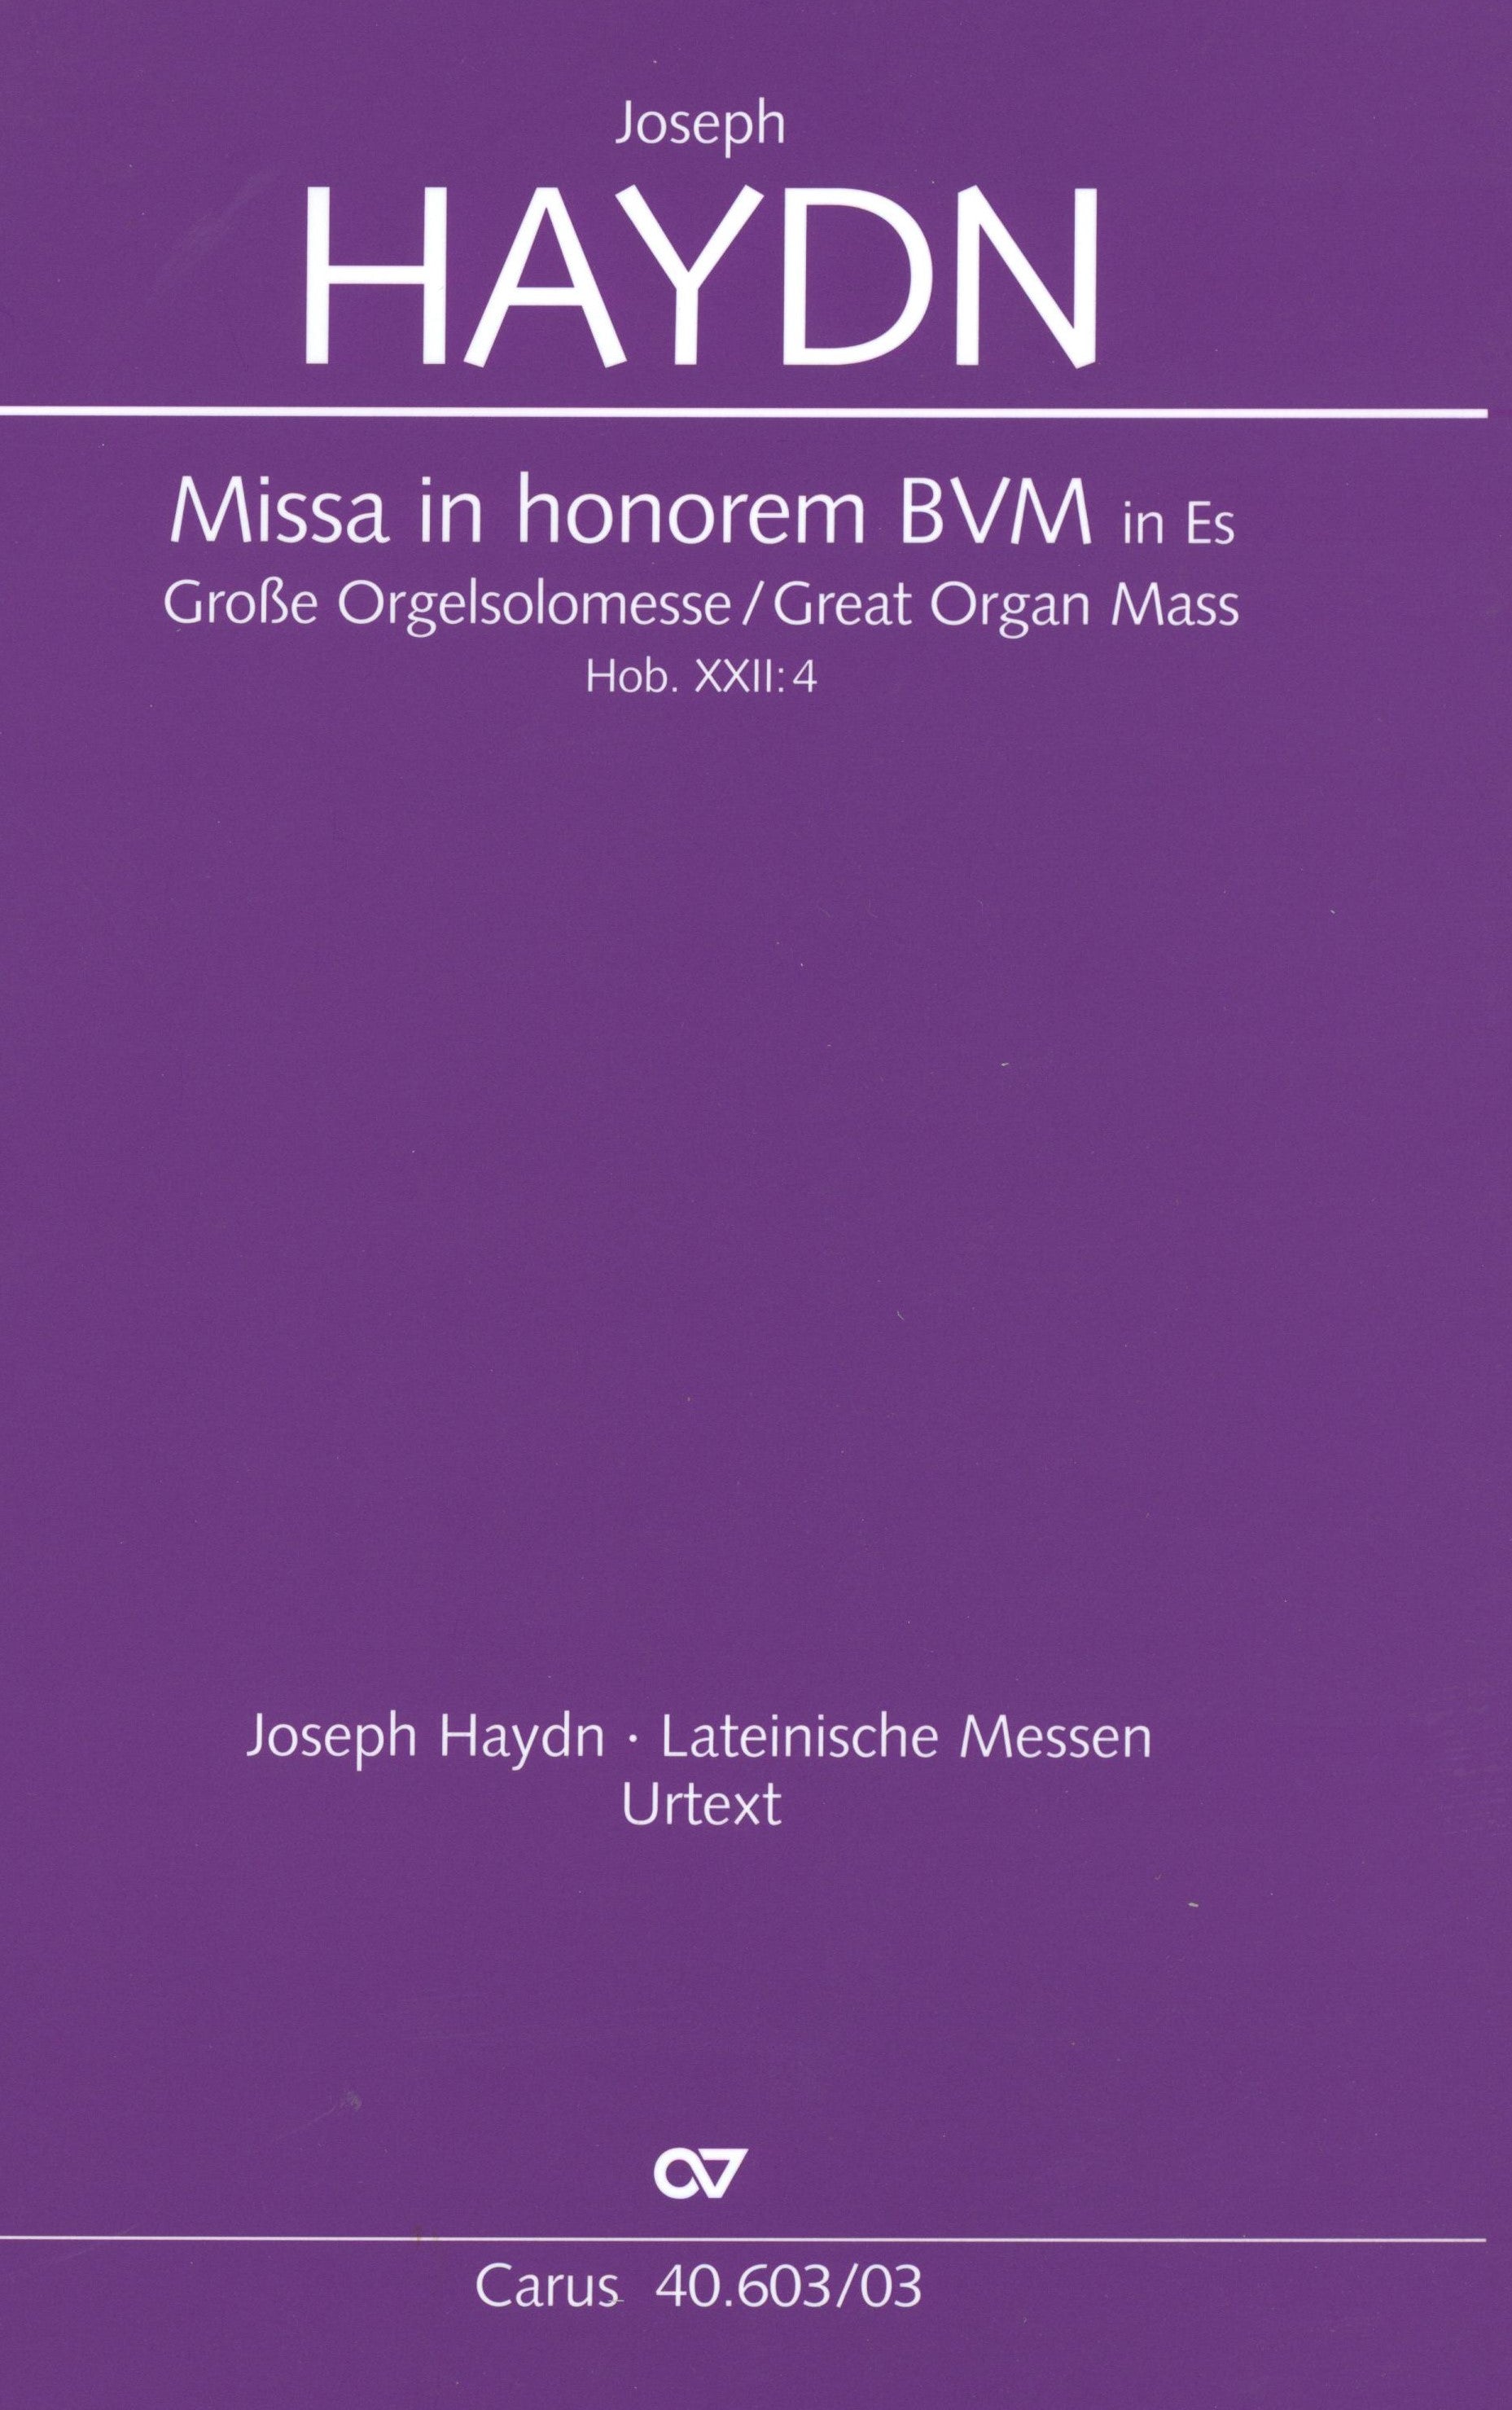 Haydn: Missa in honorem Beatissimae Virginis Mariae, Hob. XXII:4